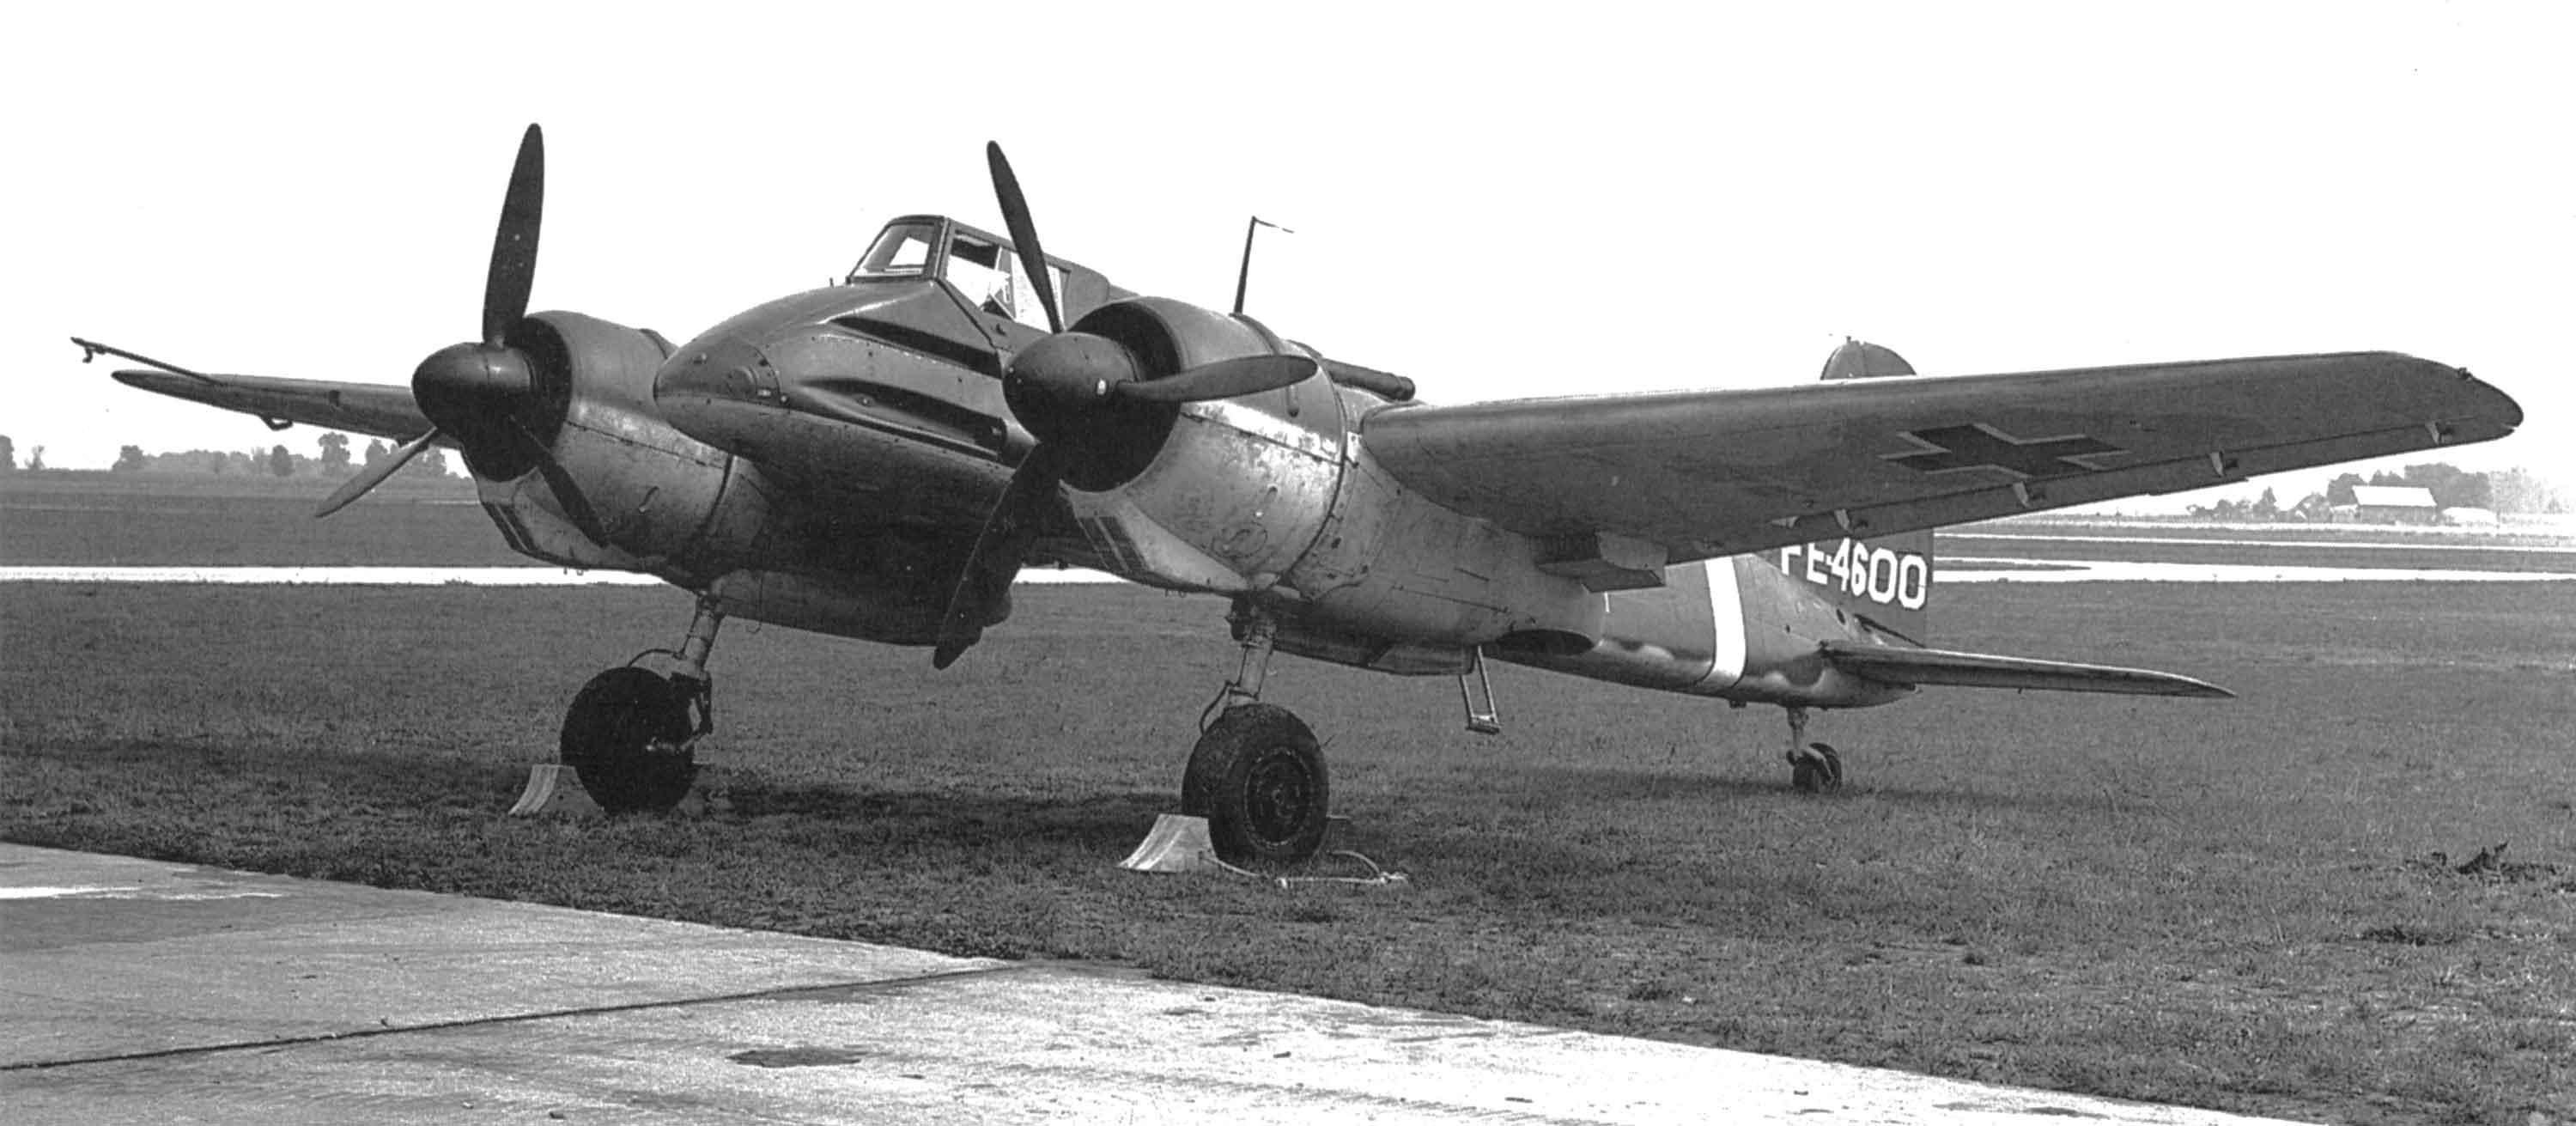 hs-129-aircraft-of-world-war-ii-ww2aircraft-forums